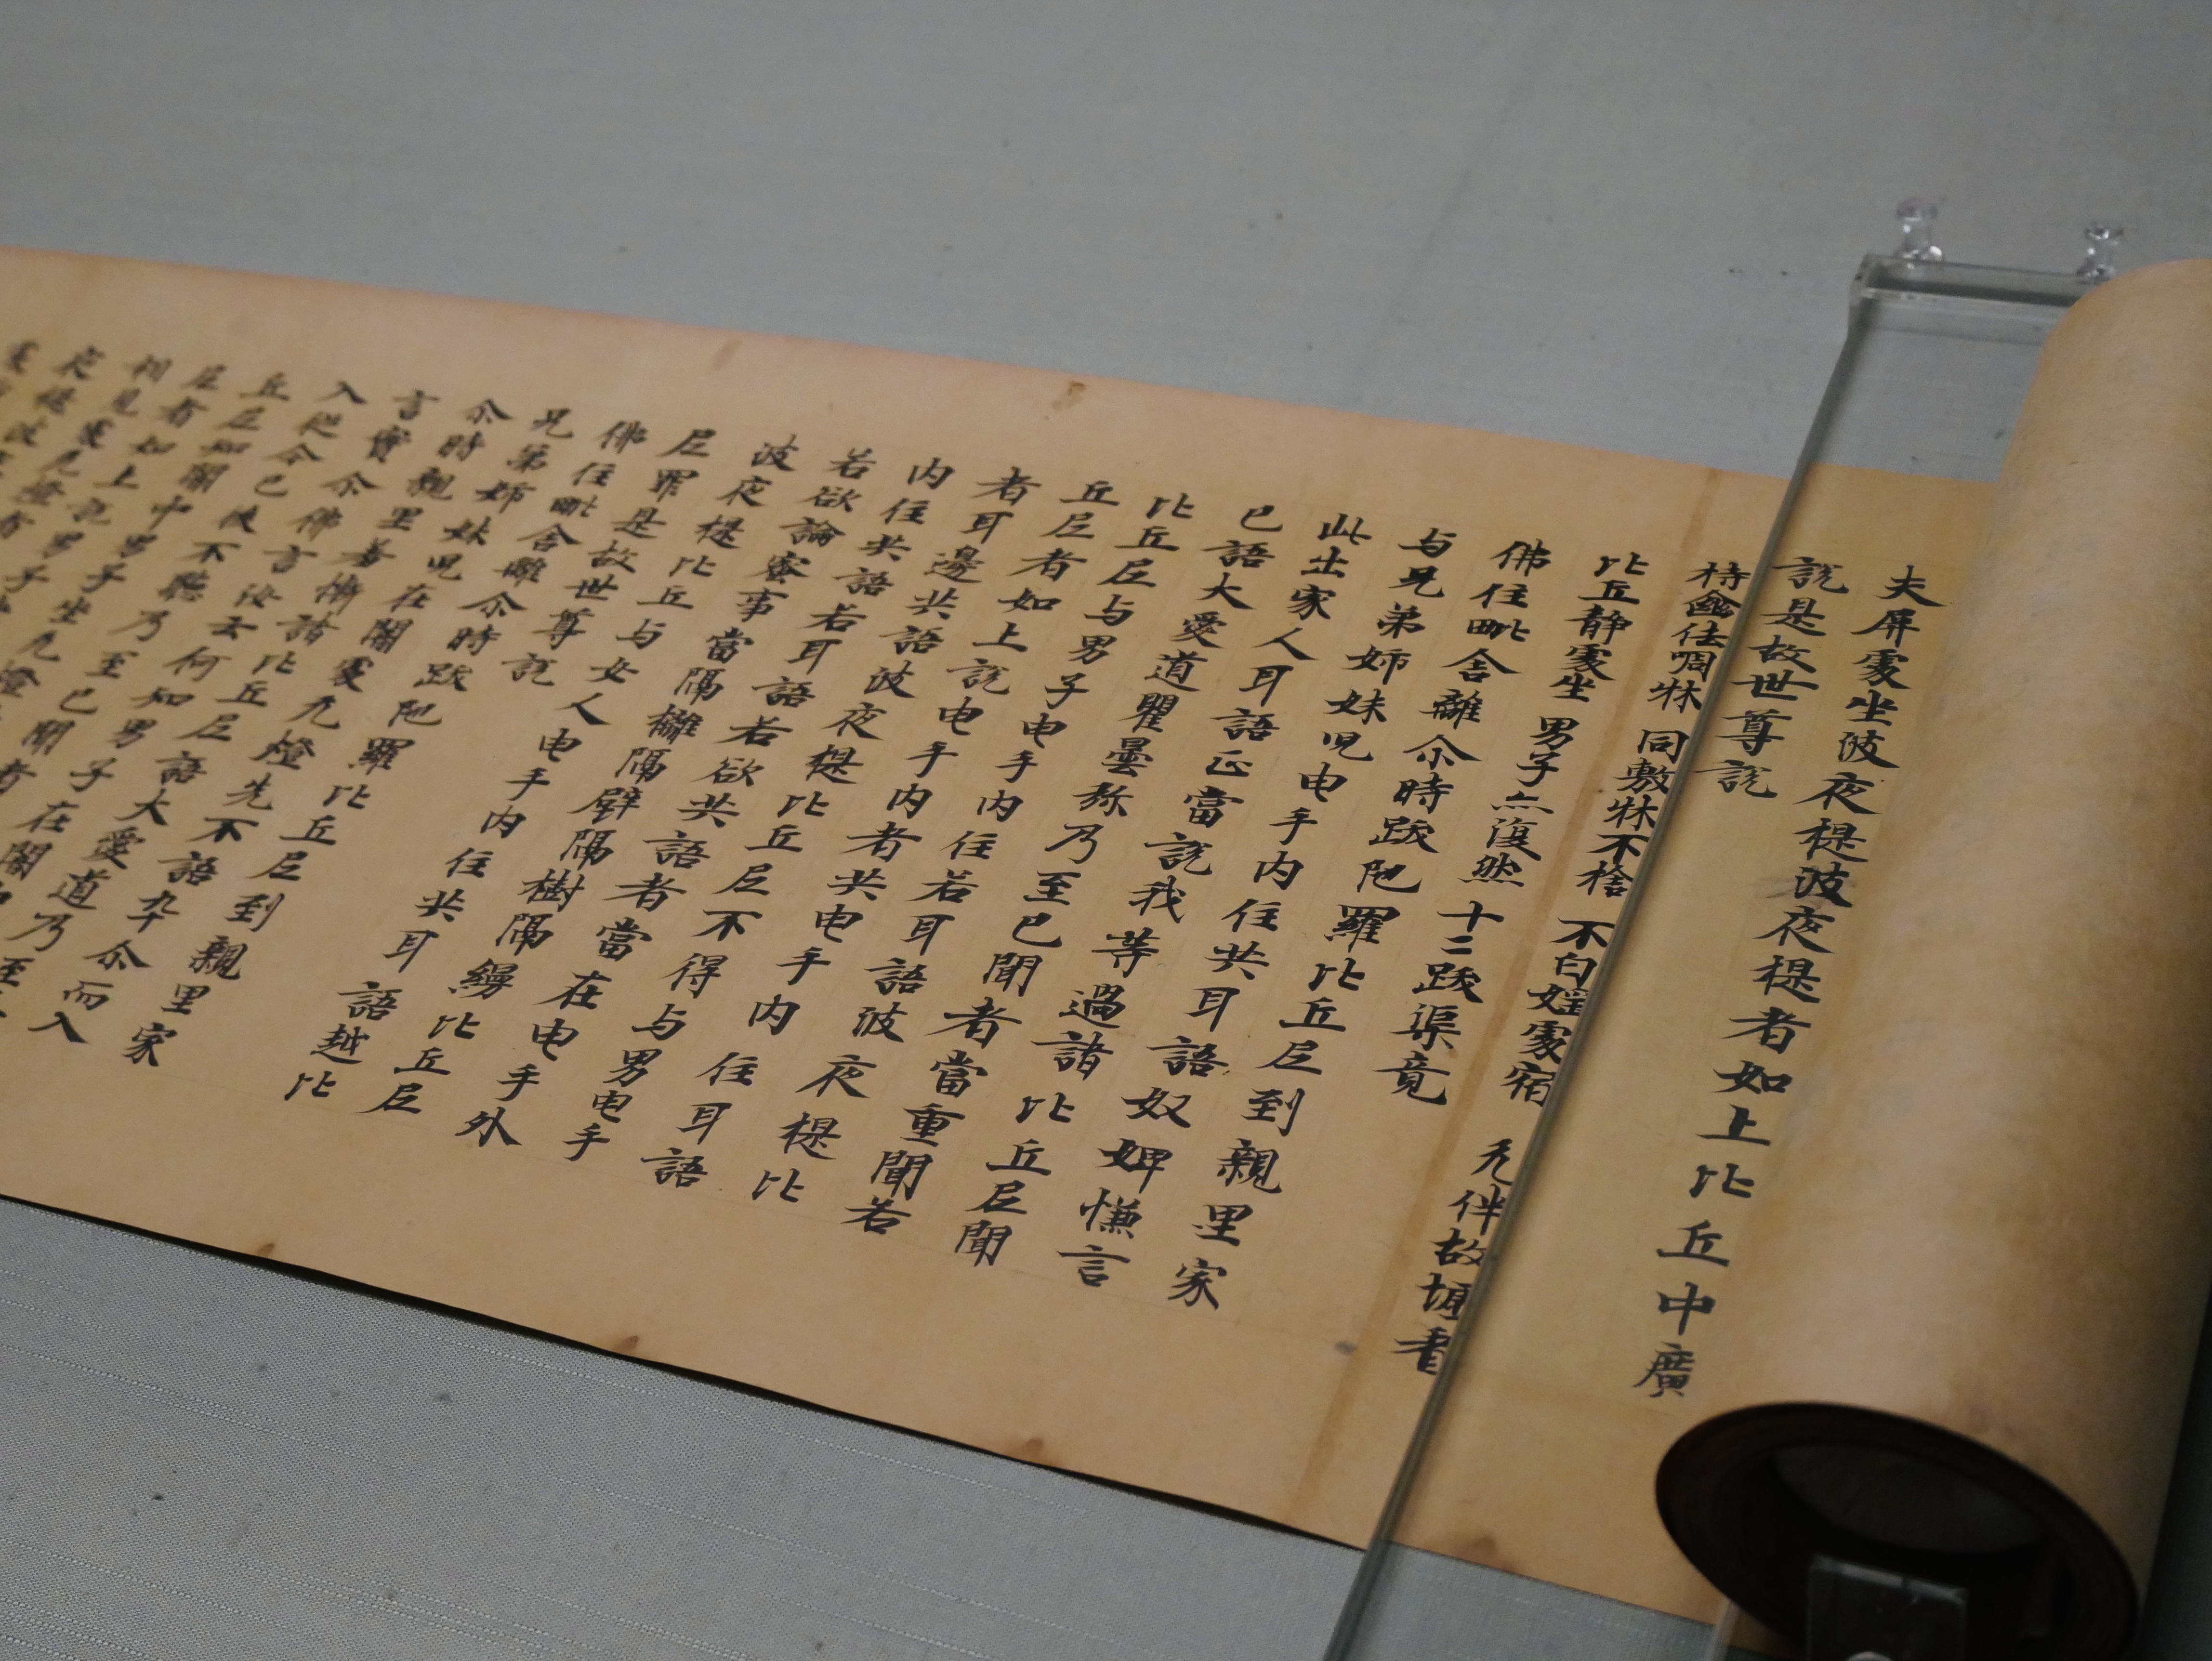 2022-4-30。东京国立博物馆。</br>很明显能感觉到中国文化在其中的交织，尤其是古代的日文书写，完全就是汉字刚传入的样子